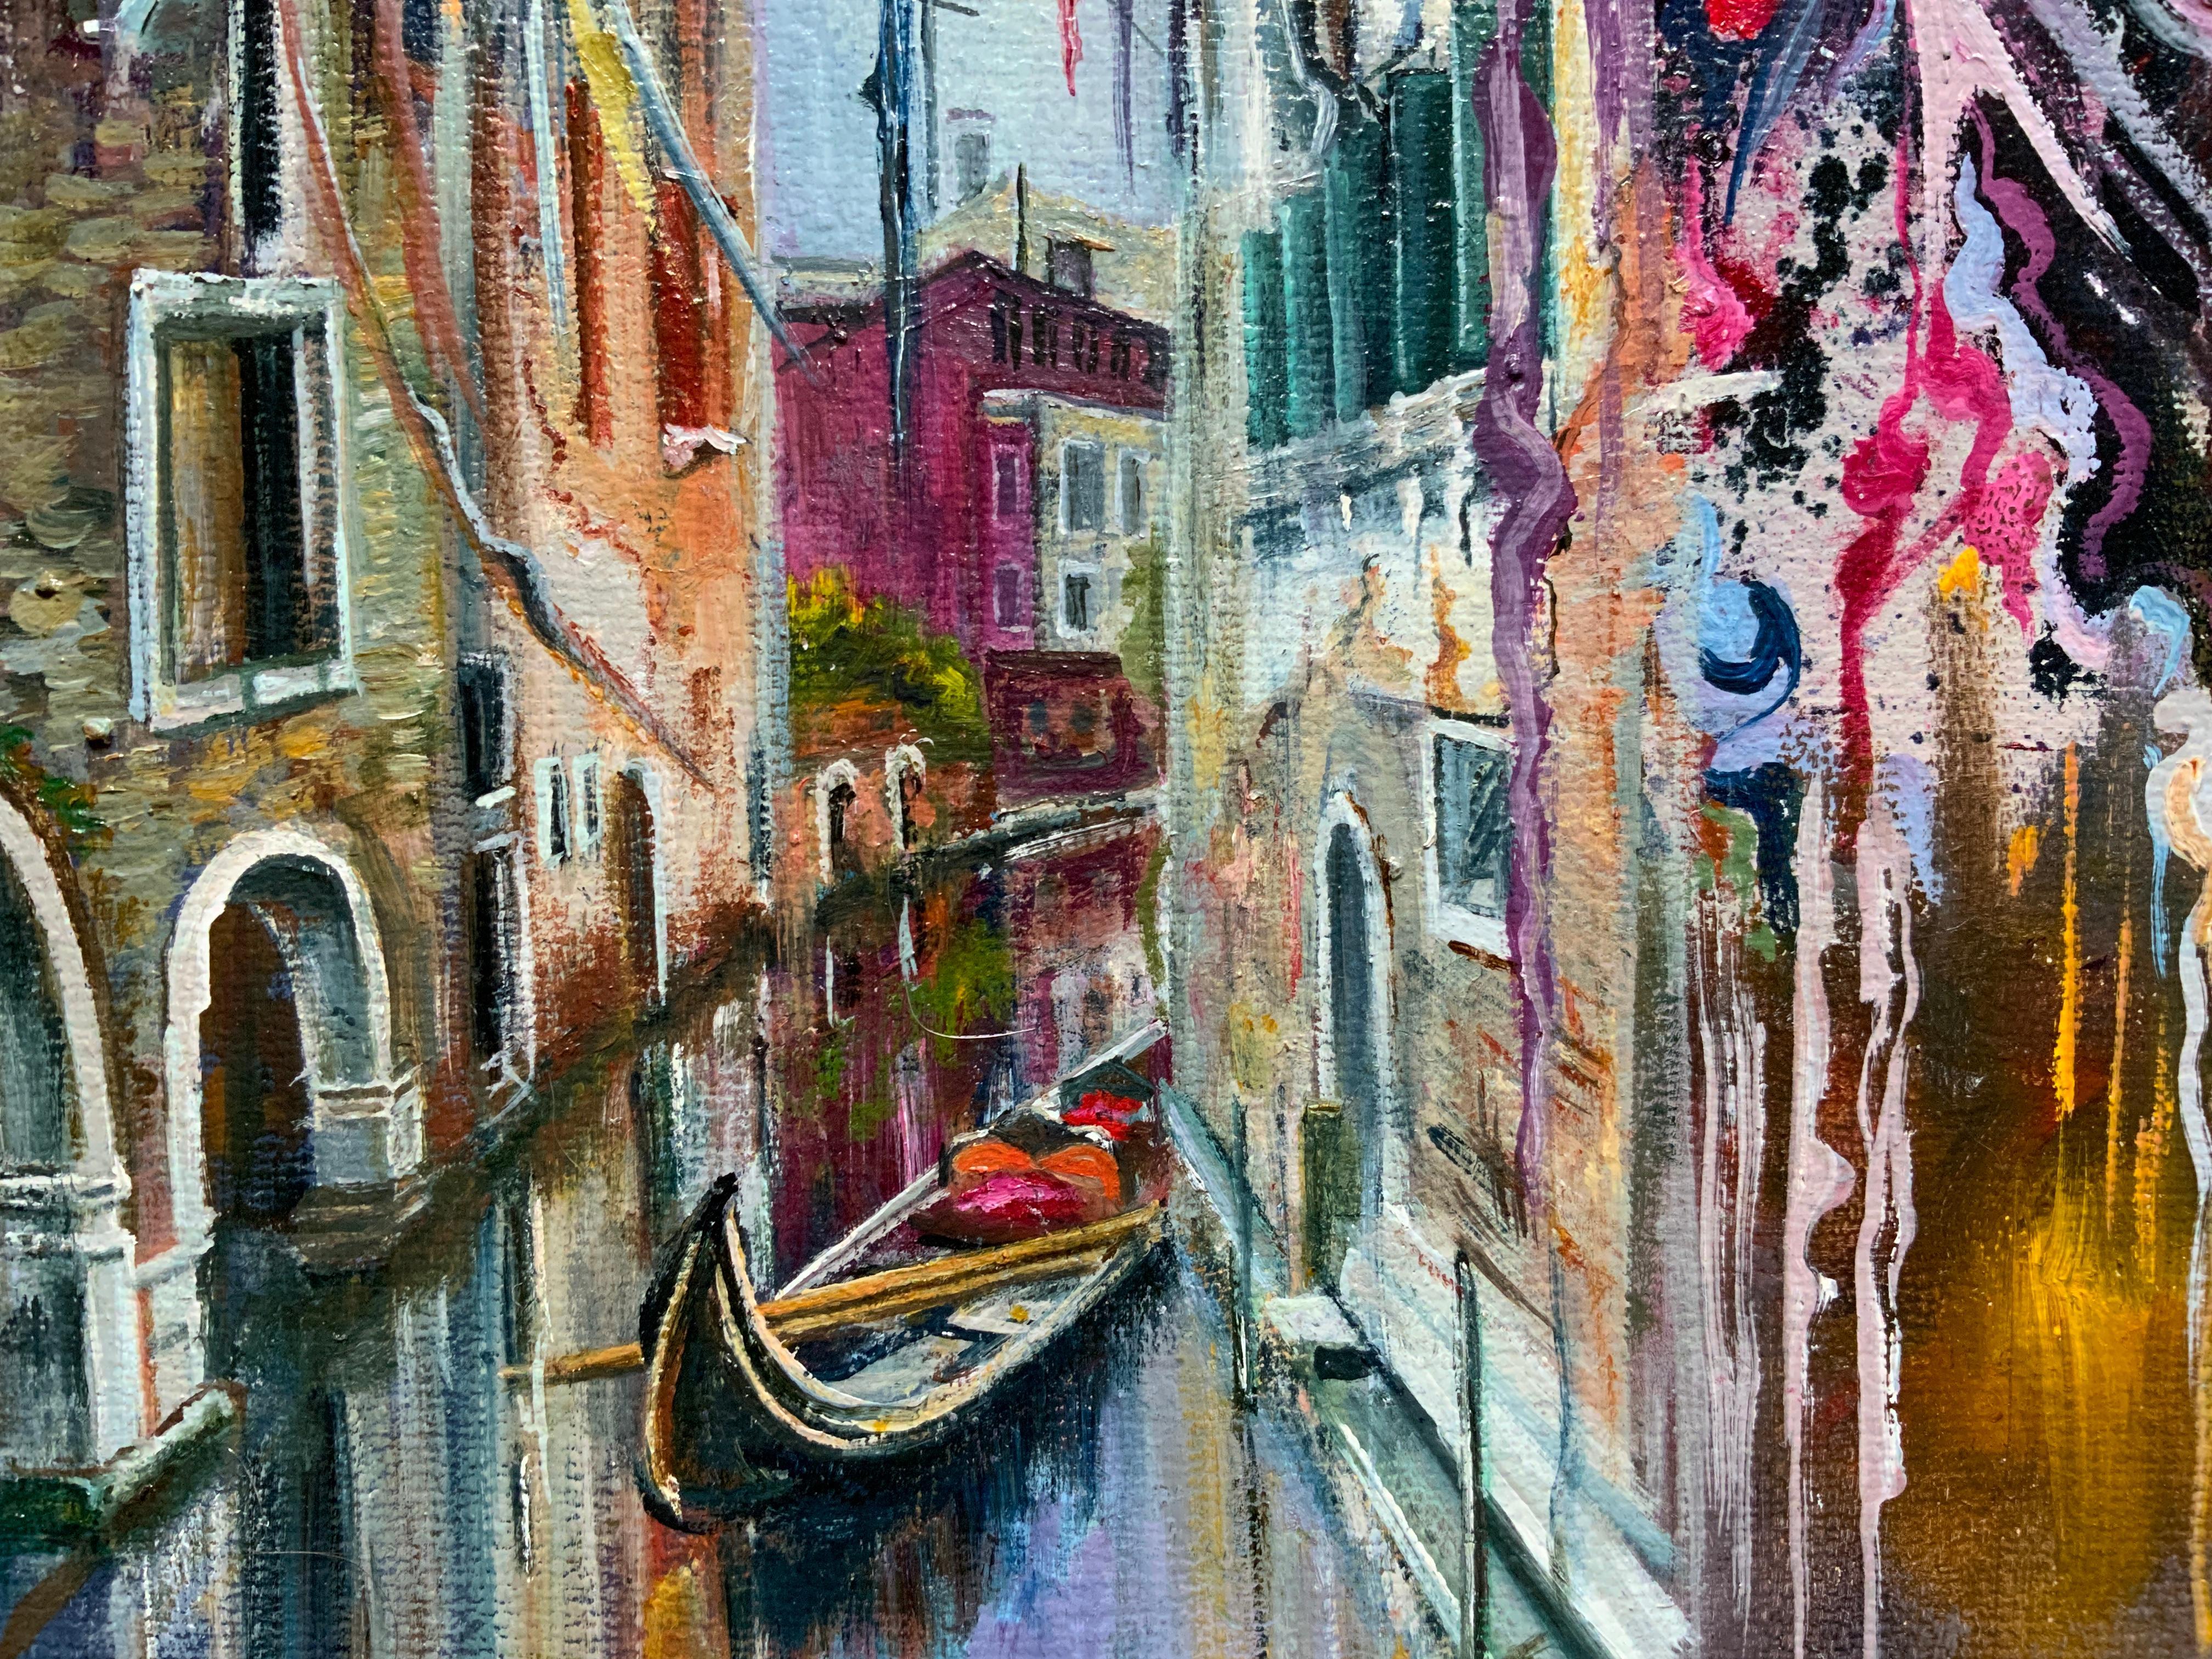 Venice - Painting by Chulkova Elena